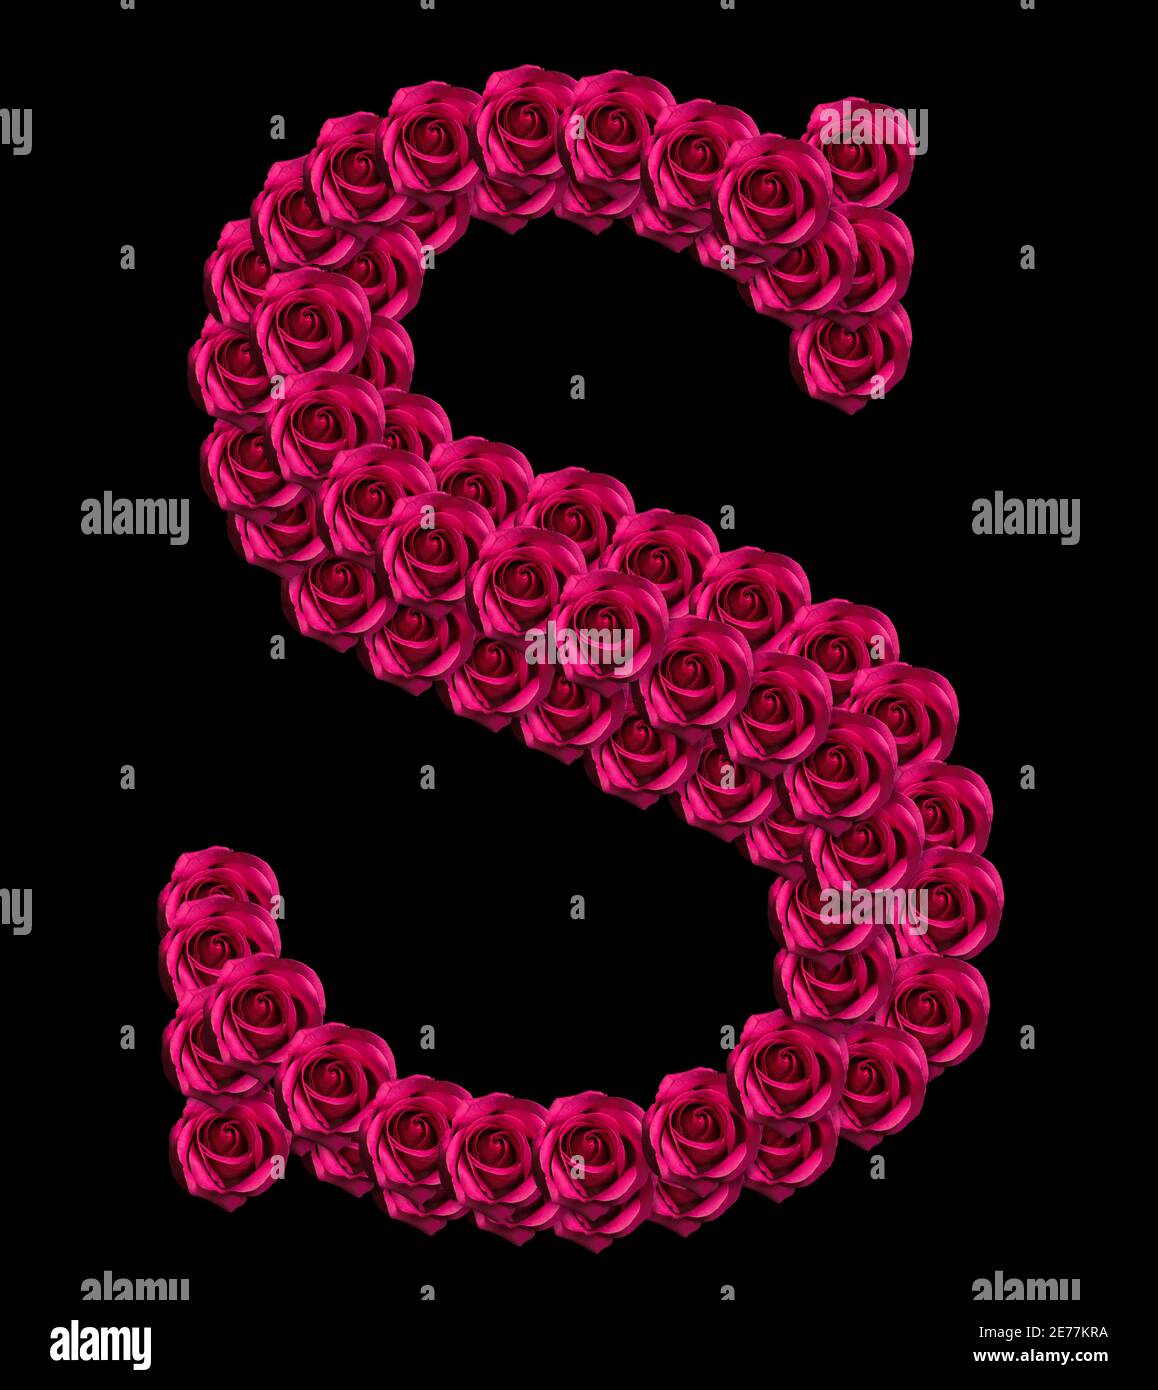 Romantisches Konzeptbild eines Großbuchstabens S aus roten Rosen. Isoliert auf schwarzem Hintergrund. Design-Element für Liebe oder Valentinstag Themen Stockfoto